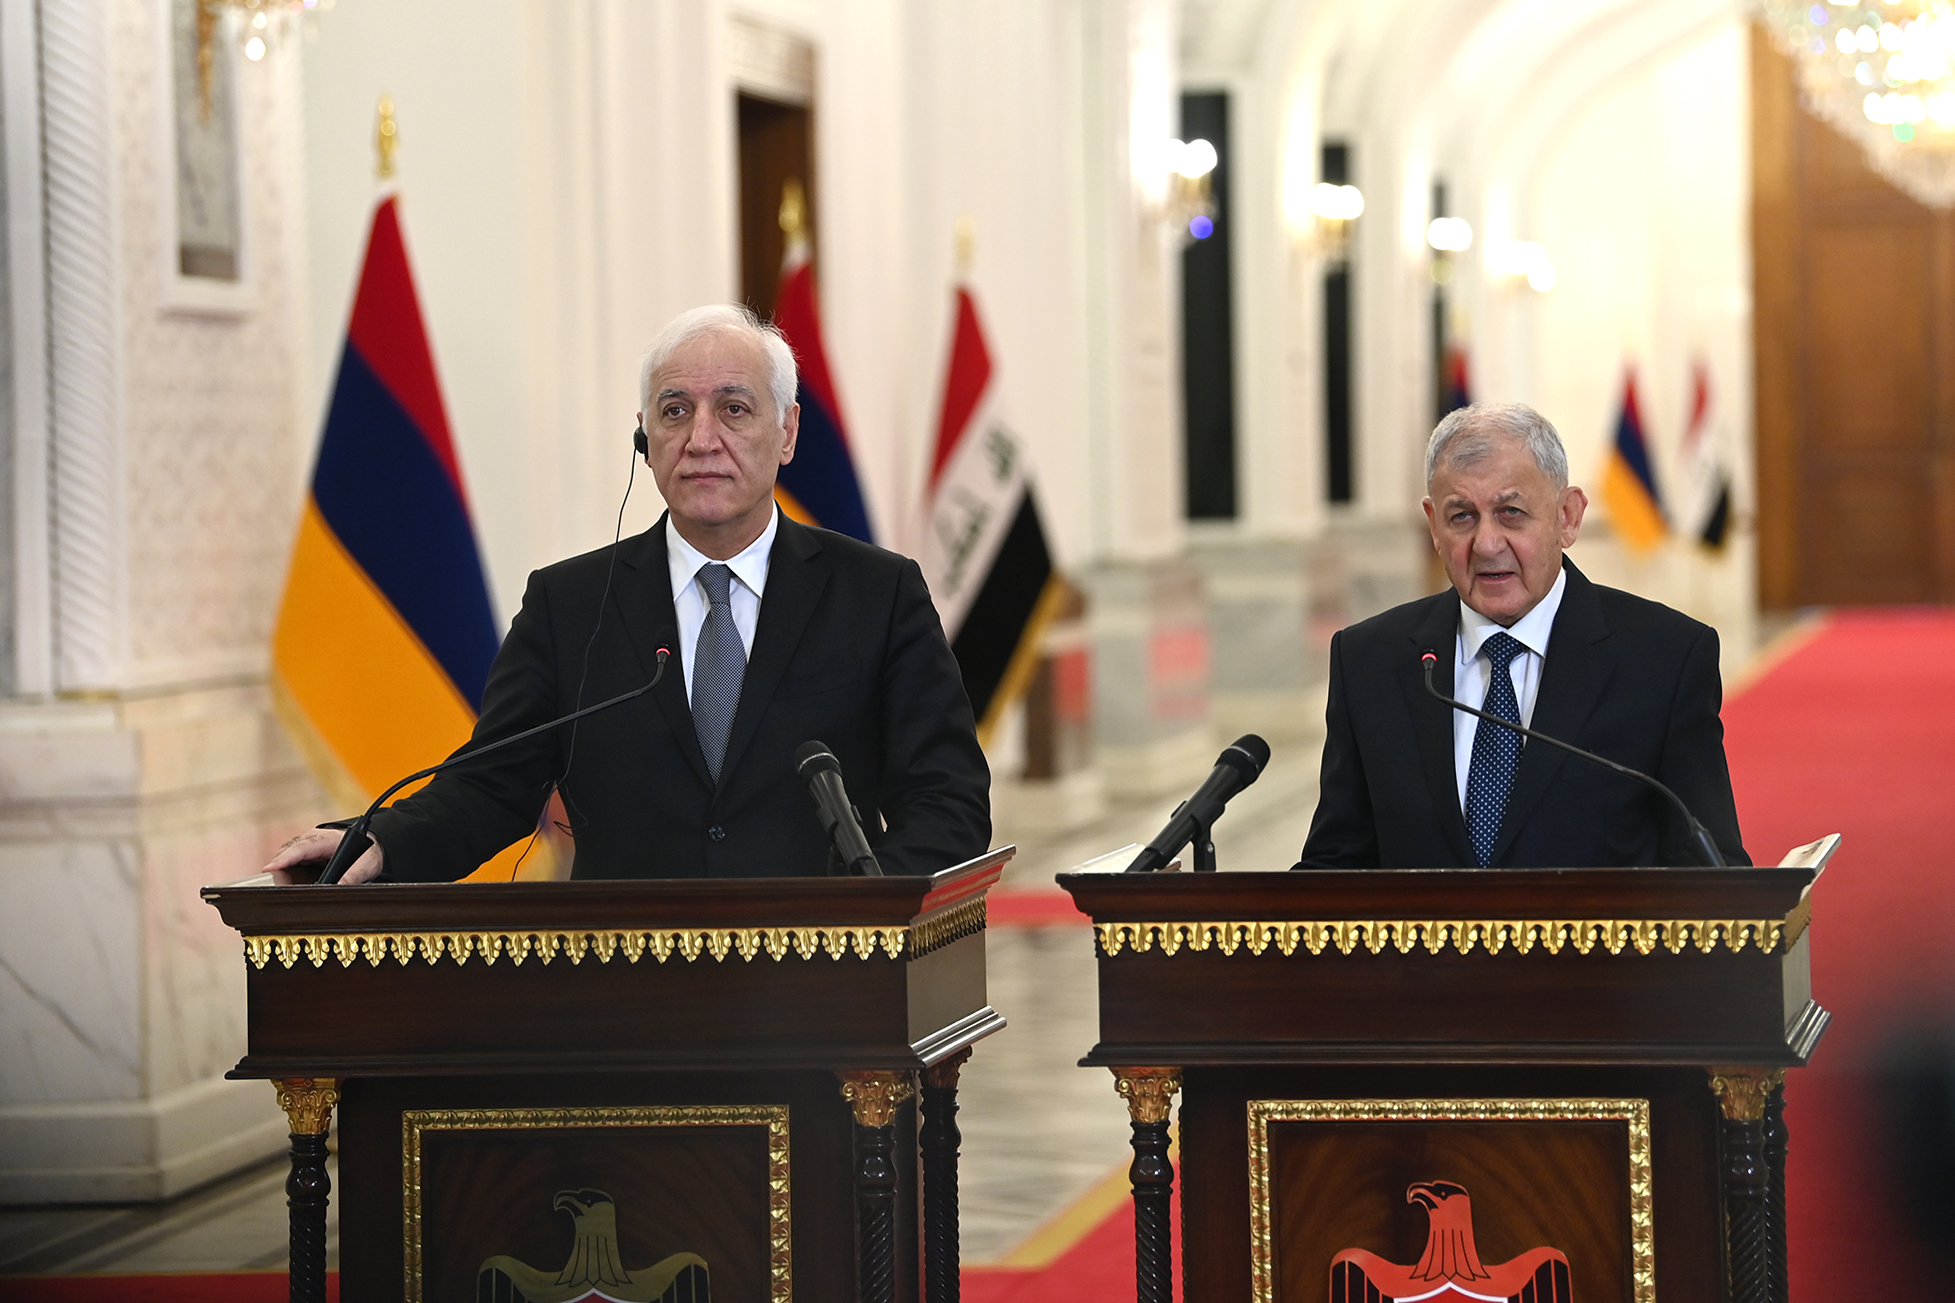 ՀՀ-ի և Իրաքի նախագահներն անդրադարձել են պաշտպանության և անվտանգության ոլորտներում հայ-իրաքյան համագործակցության խորացման հեռանկարներին